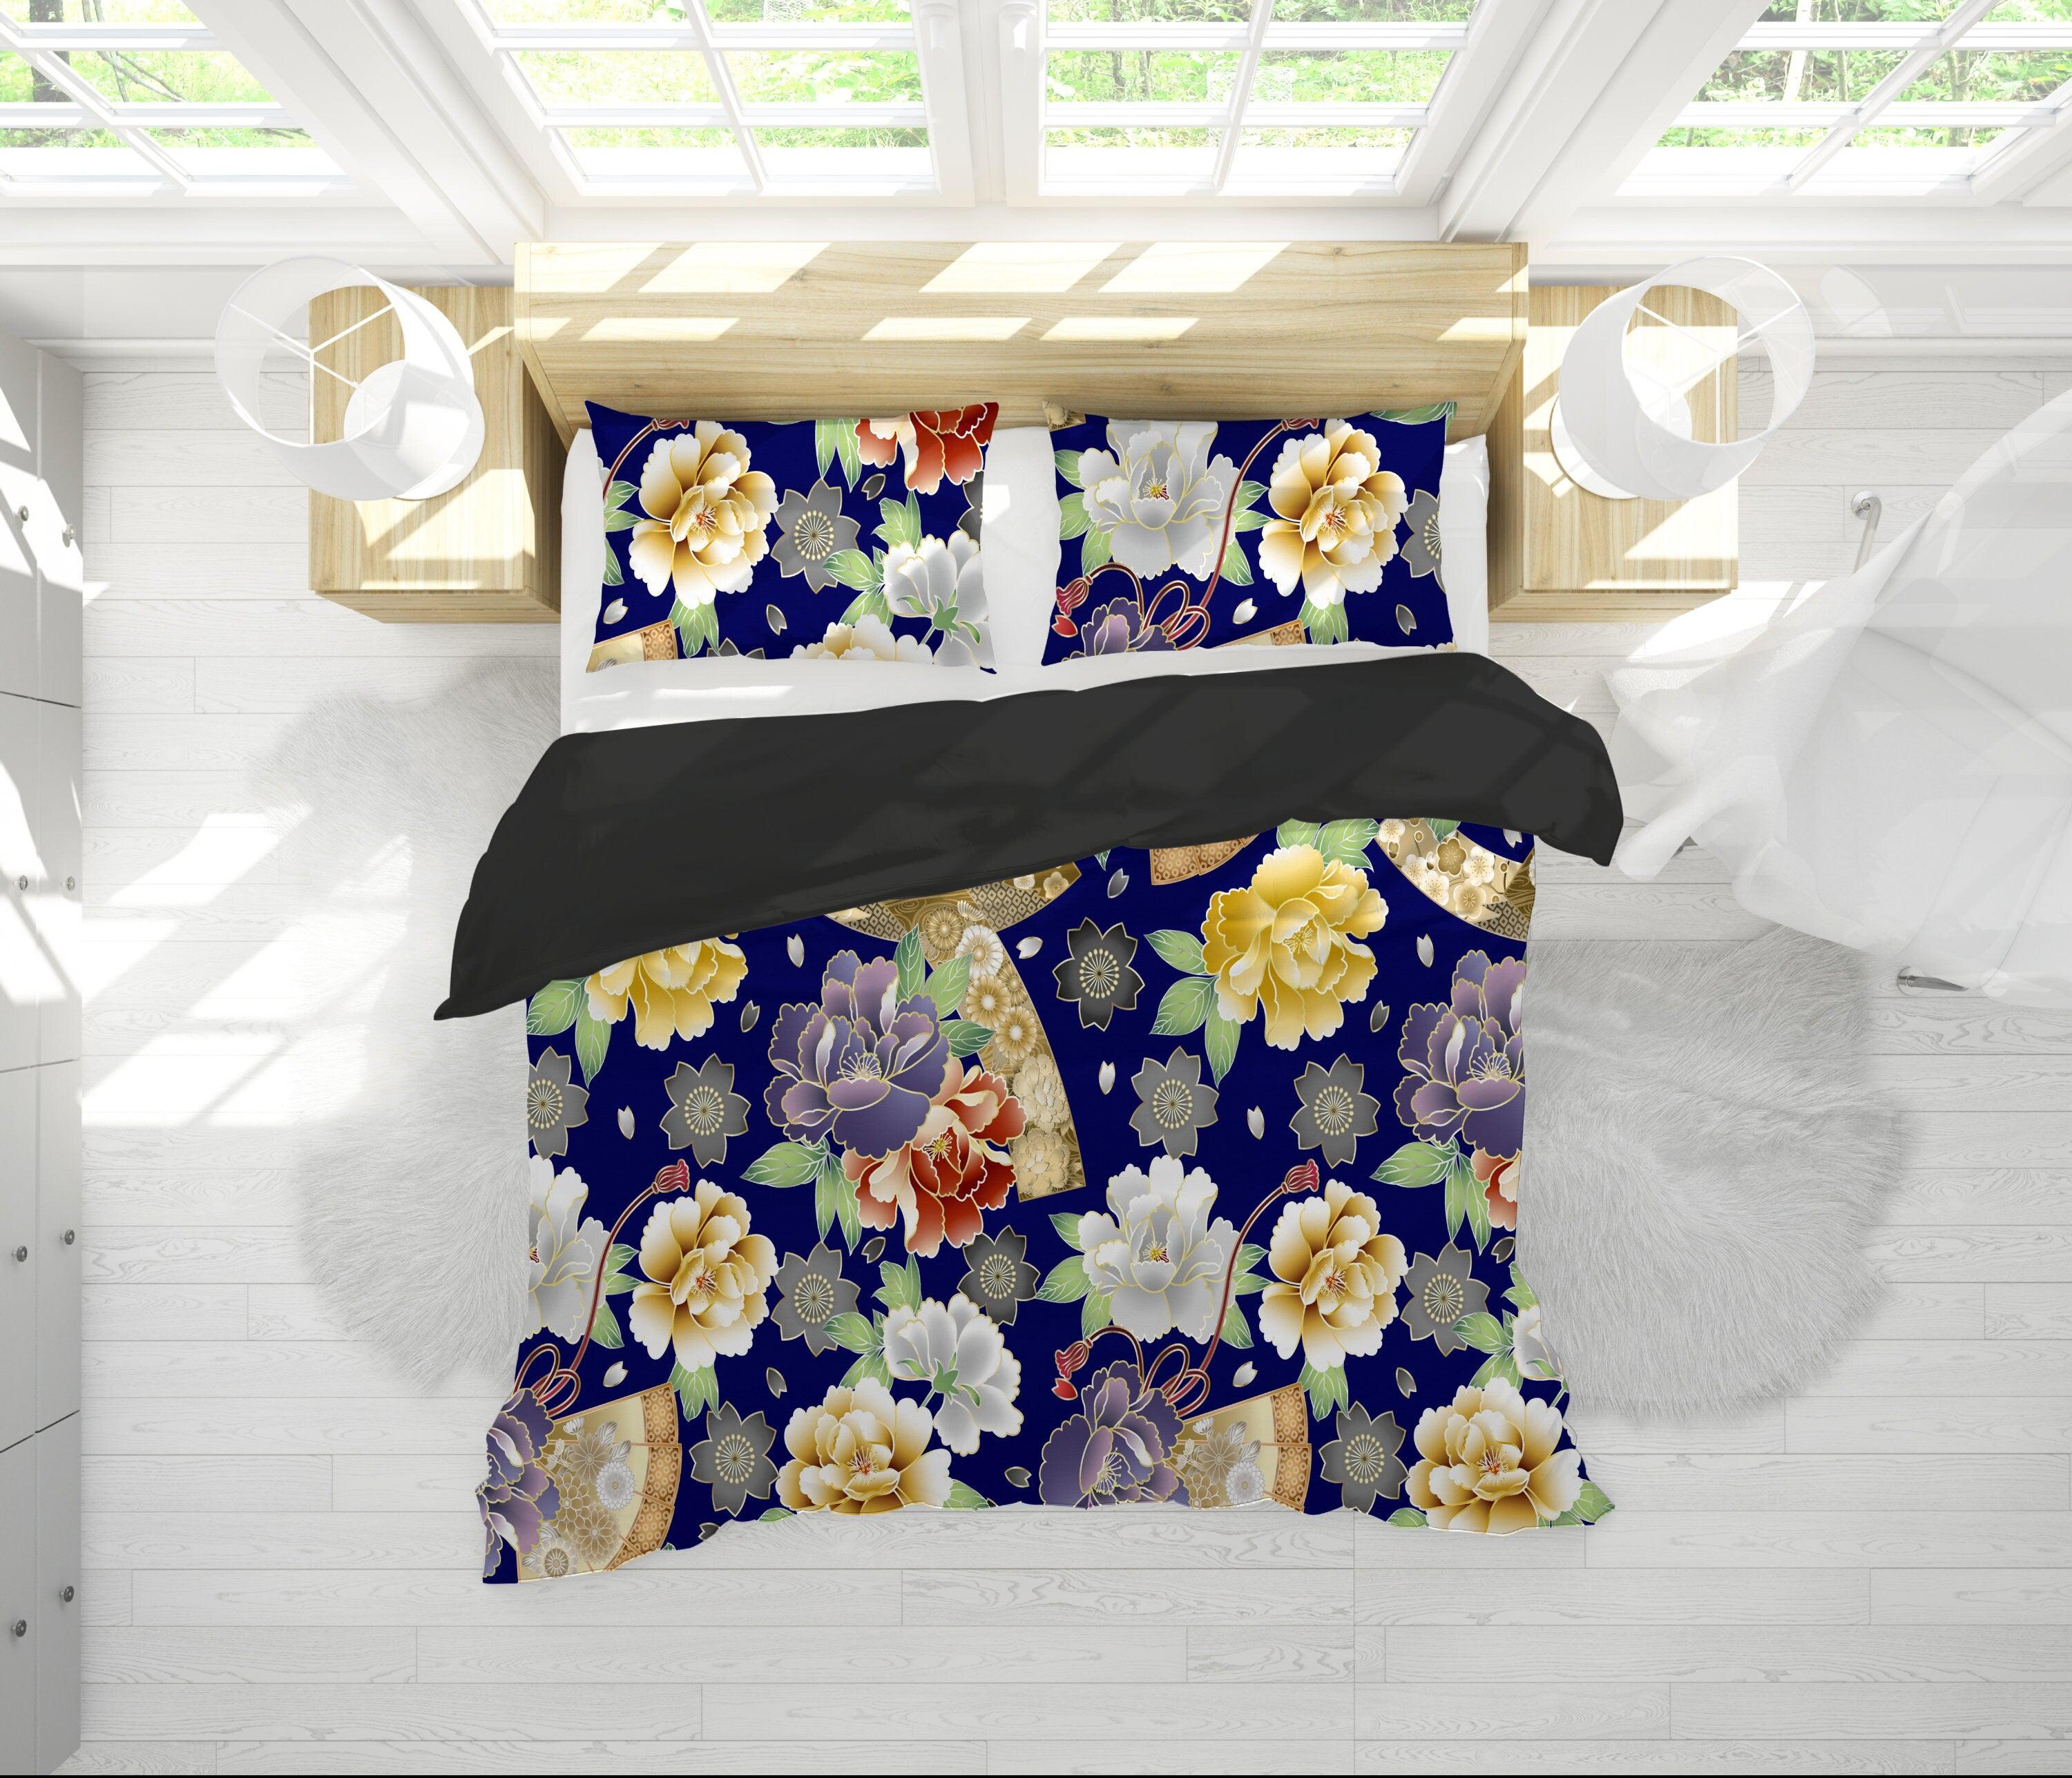 daintyduvet Blue Duvet Cover Full Set | Comforter Cover Set with Japanese Kimono Floral Prints